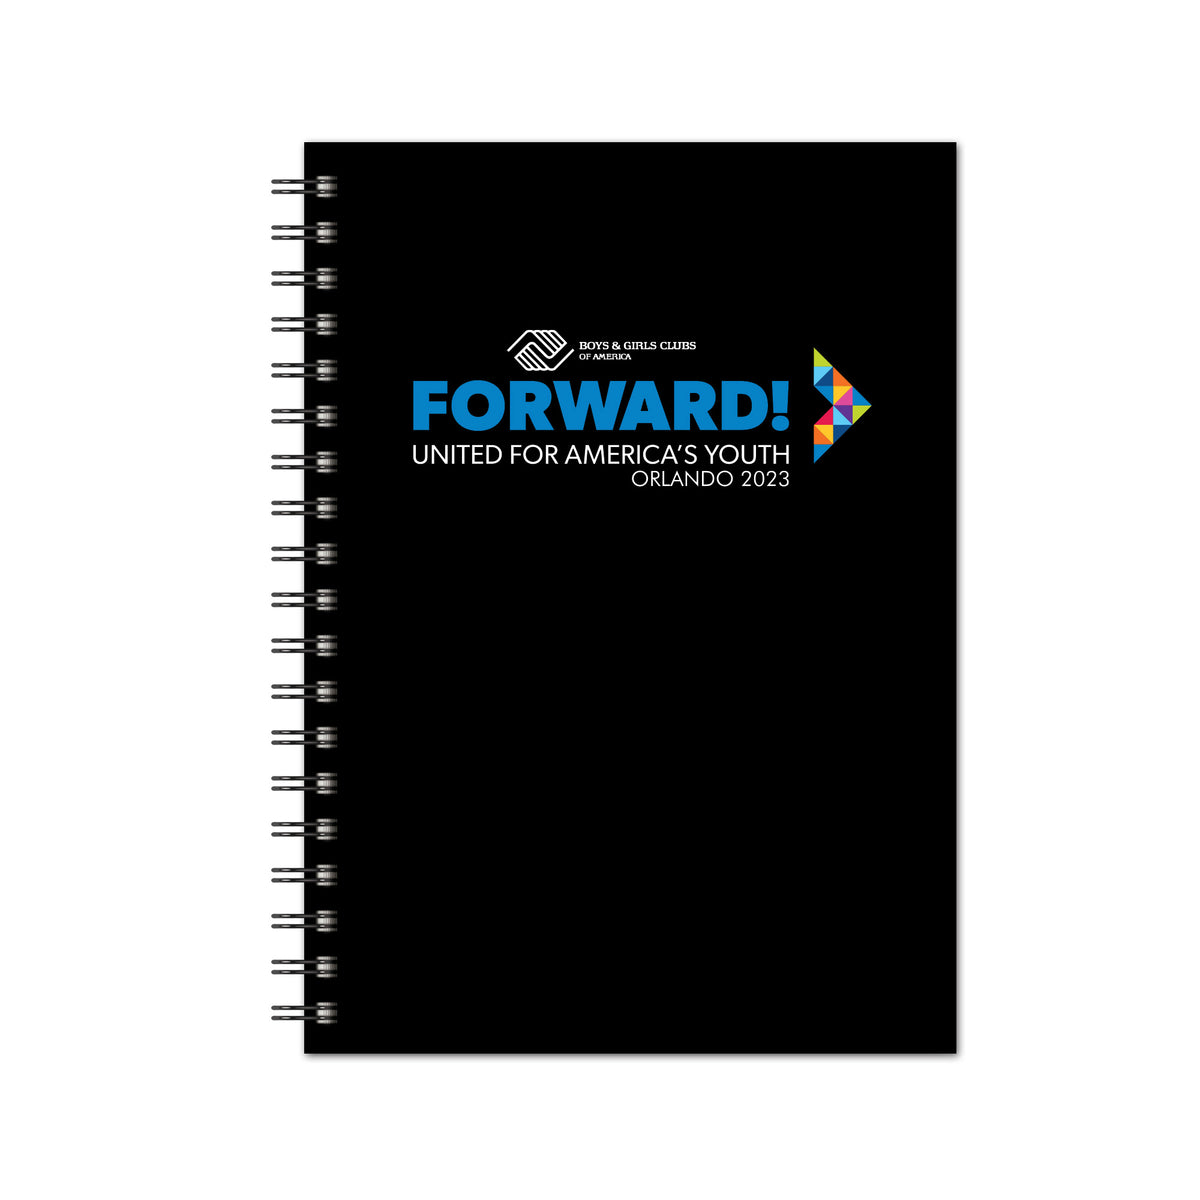 Forward Spiral 7 x 10 Journal                                          Color: Black